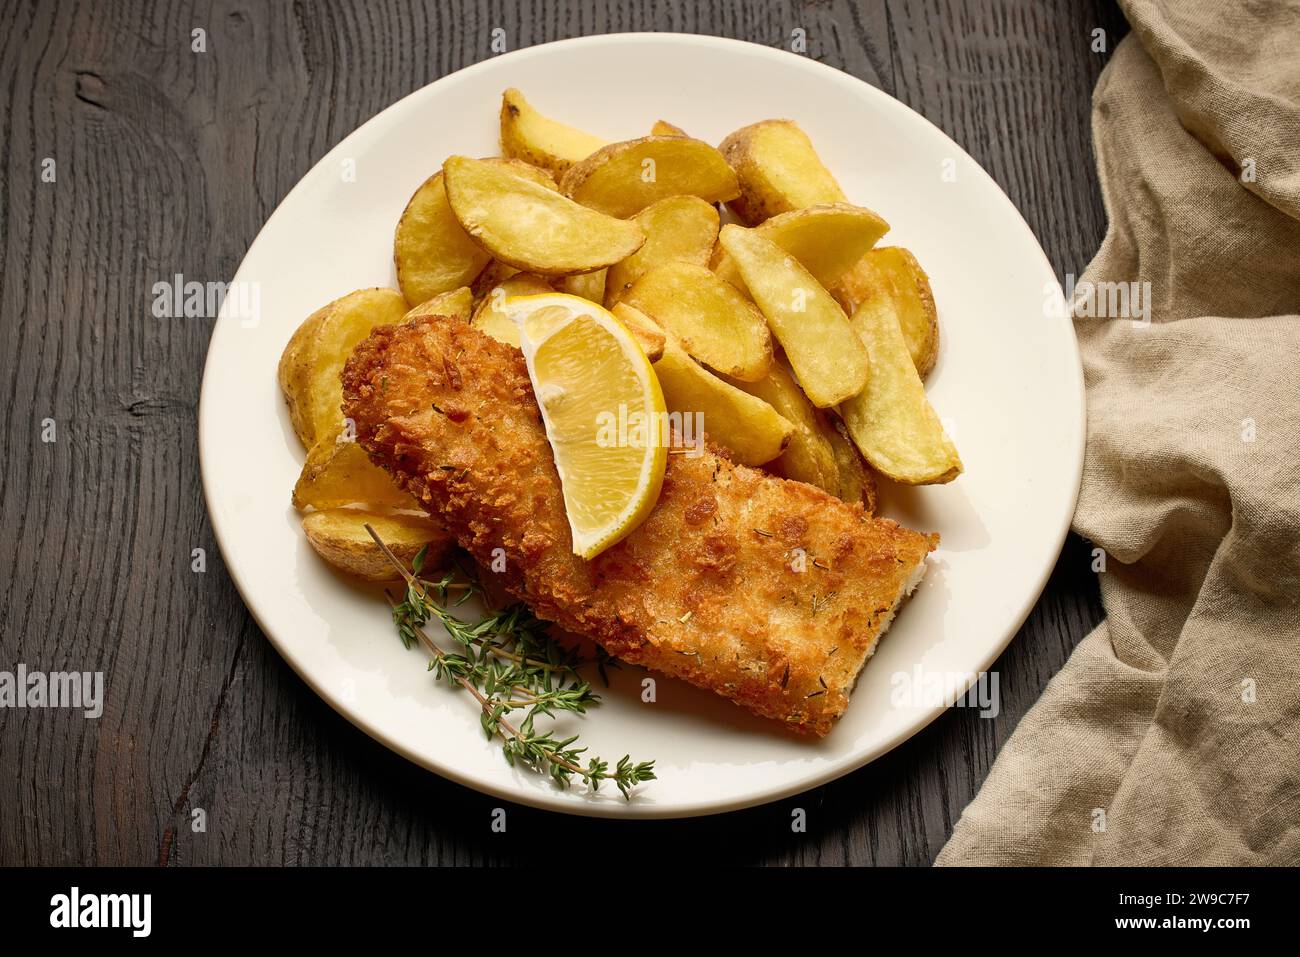 assiette de fish and chips, filet de poisson pané et quartiers de pommes de terre frites sur une table en bois foncé, vue de dessus Banque D'Images